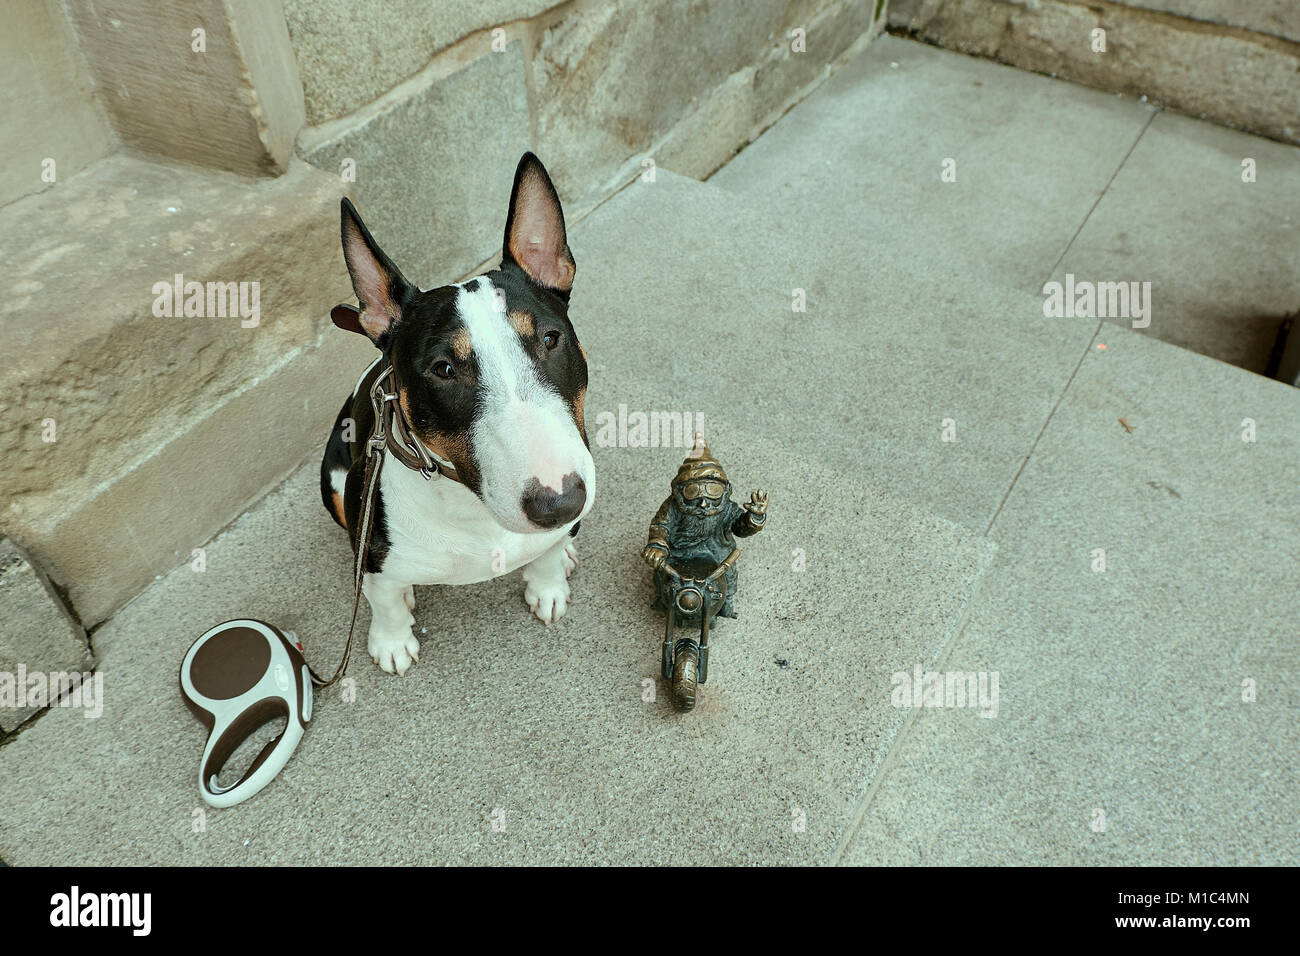 Petite statue gnome nain, gnome biker à moto, statue en bronze avec un petit chien bull terrier miniature vous regardant. Wroclaw, Pologne Banque D'Images